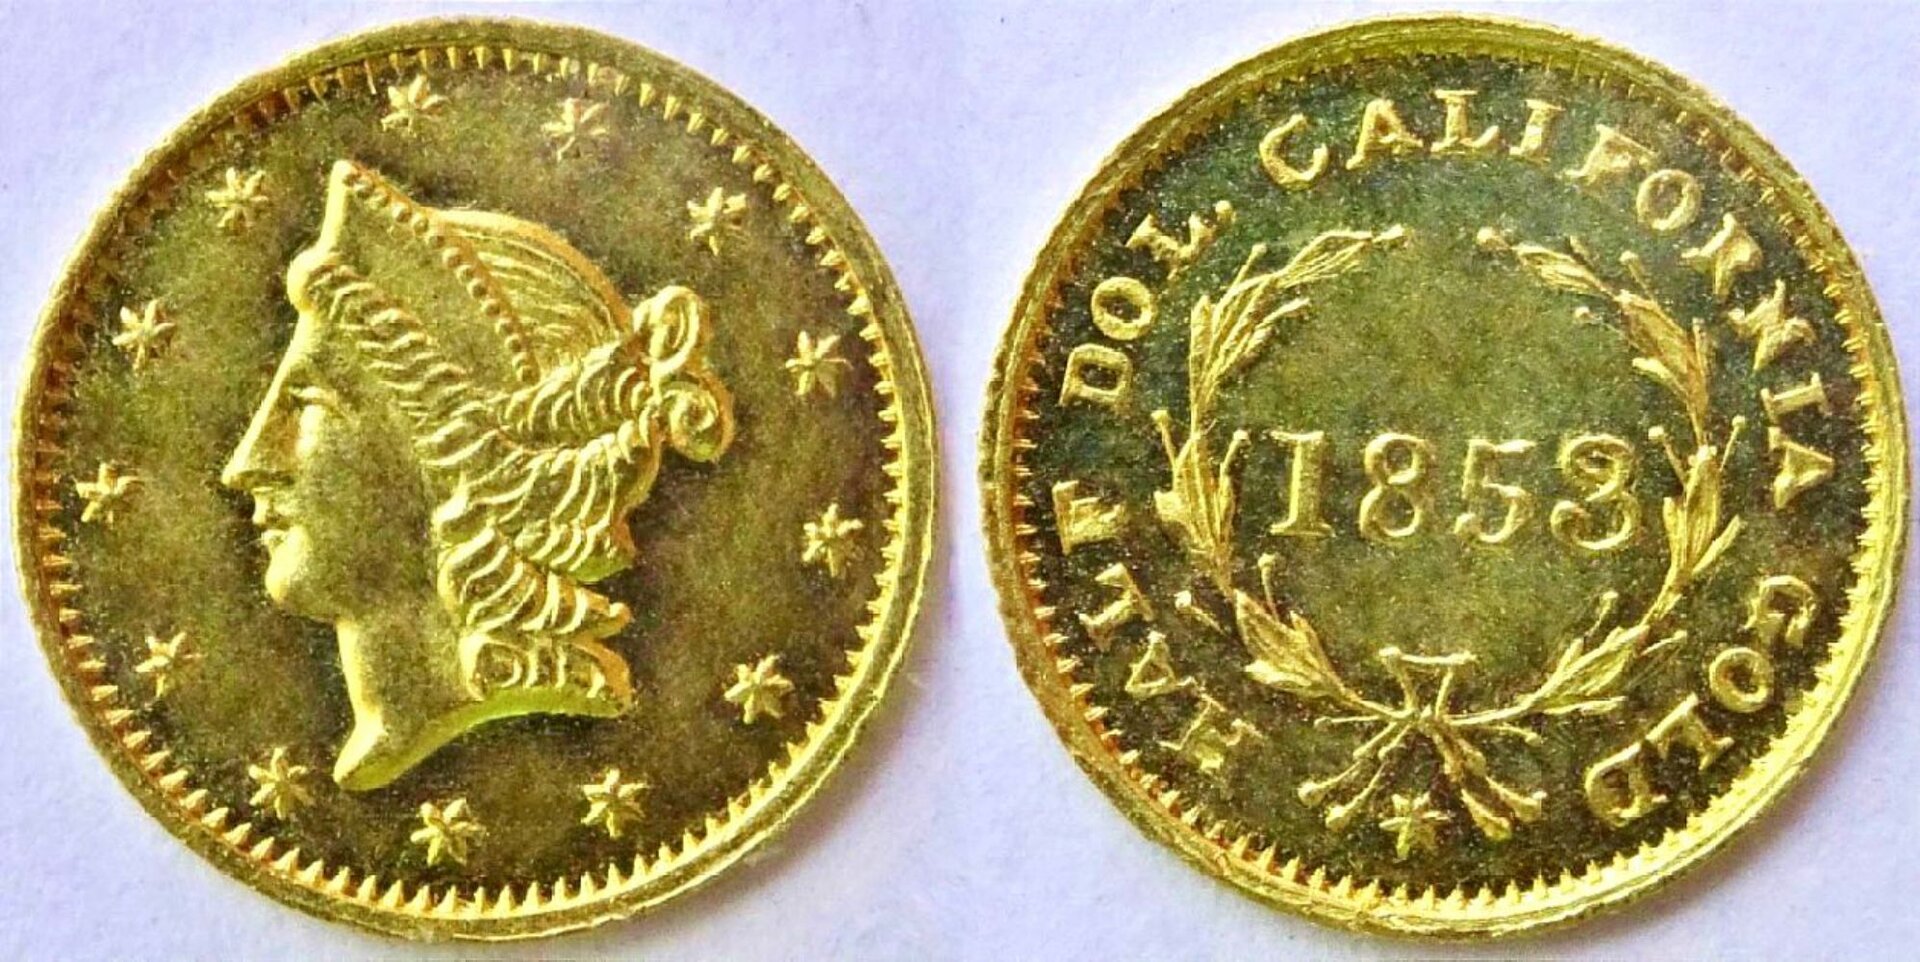 1857 Coin-30 Califo Gold 50c BG428.jpg